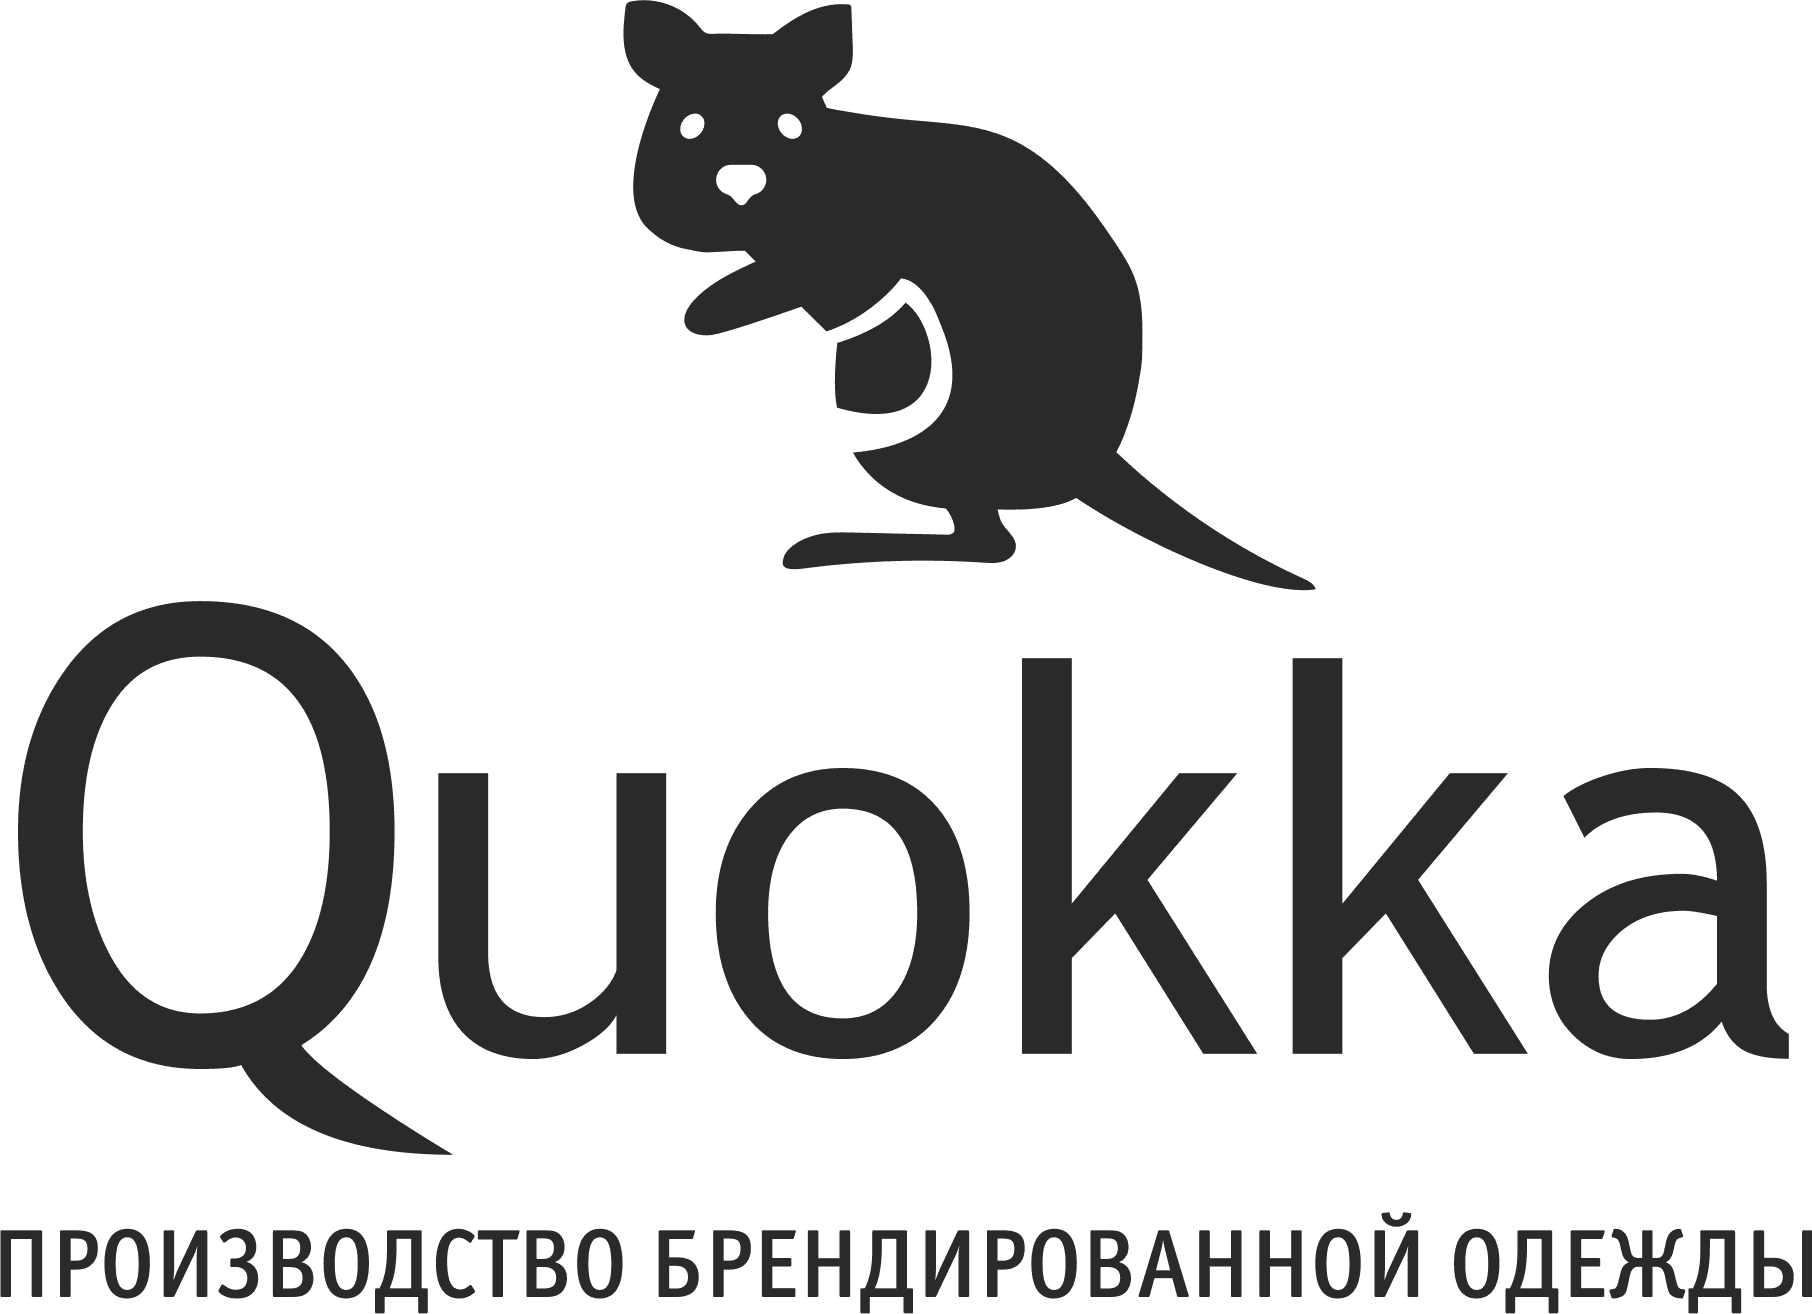 Производство брендированной одежды Quokka